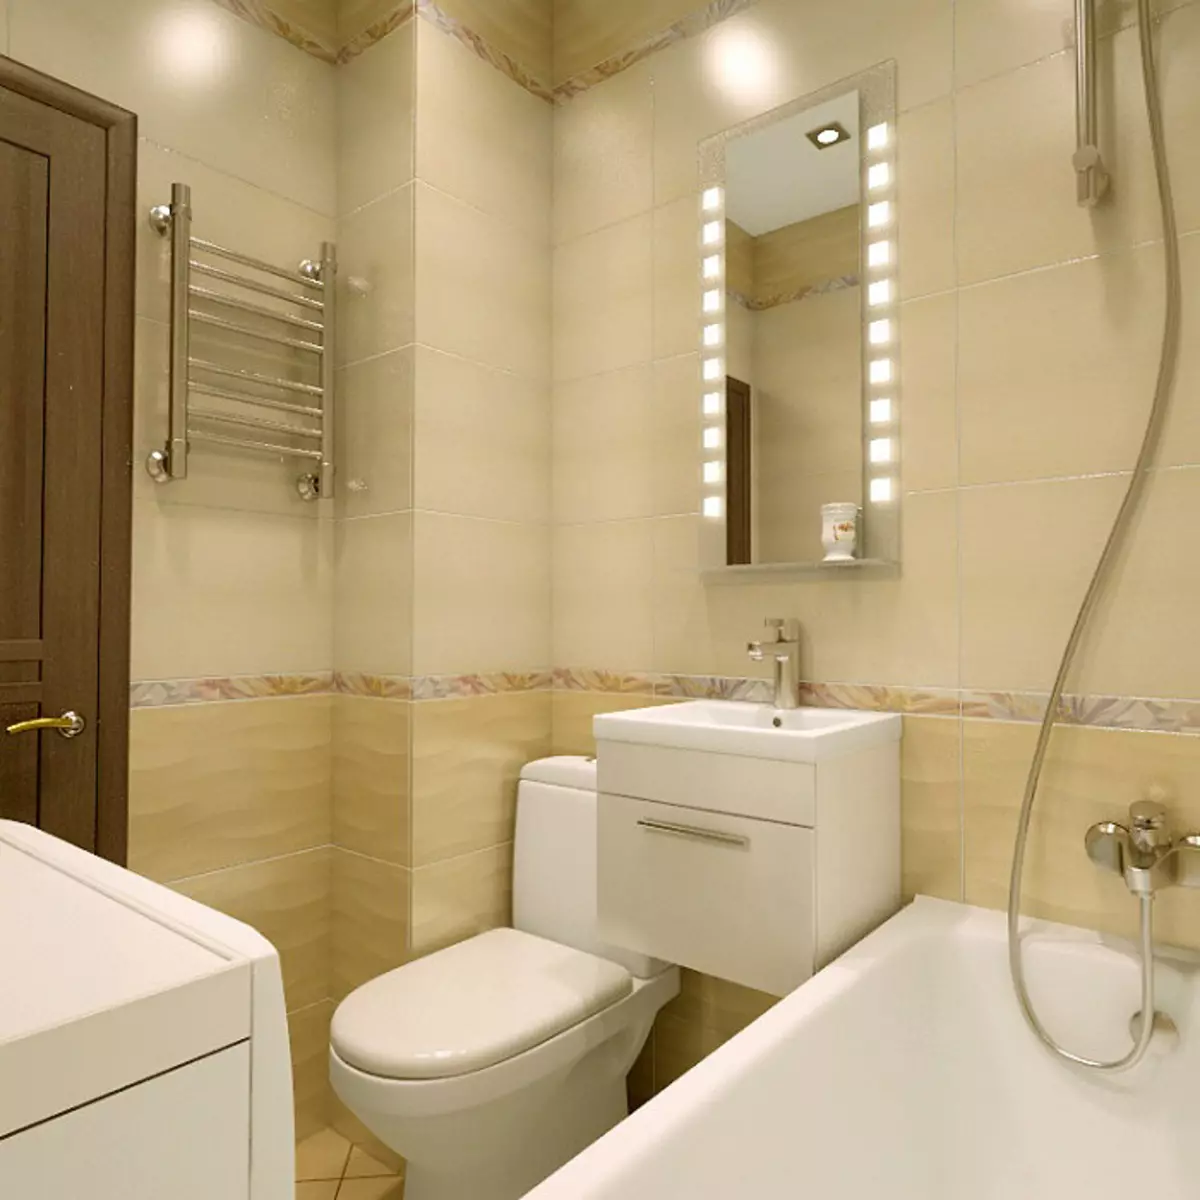 Khrushchev（75枚の写真）にある浴室を組み合わせた浴室：トイレと組み合わせた小さなお風呂のデザイン。部屋はどんなサイズですか？洗濯機が付いているバスルームのインテリアデザインのアイデア 10081_73